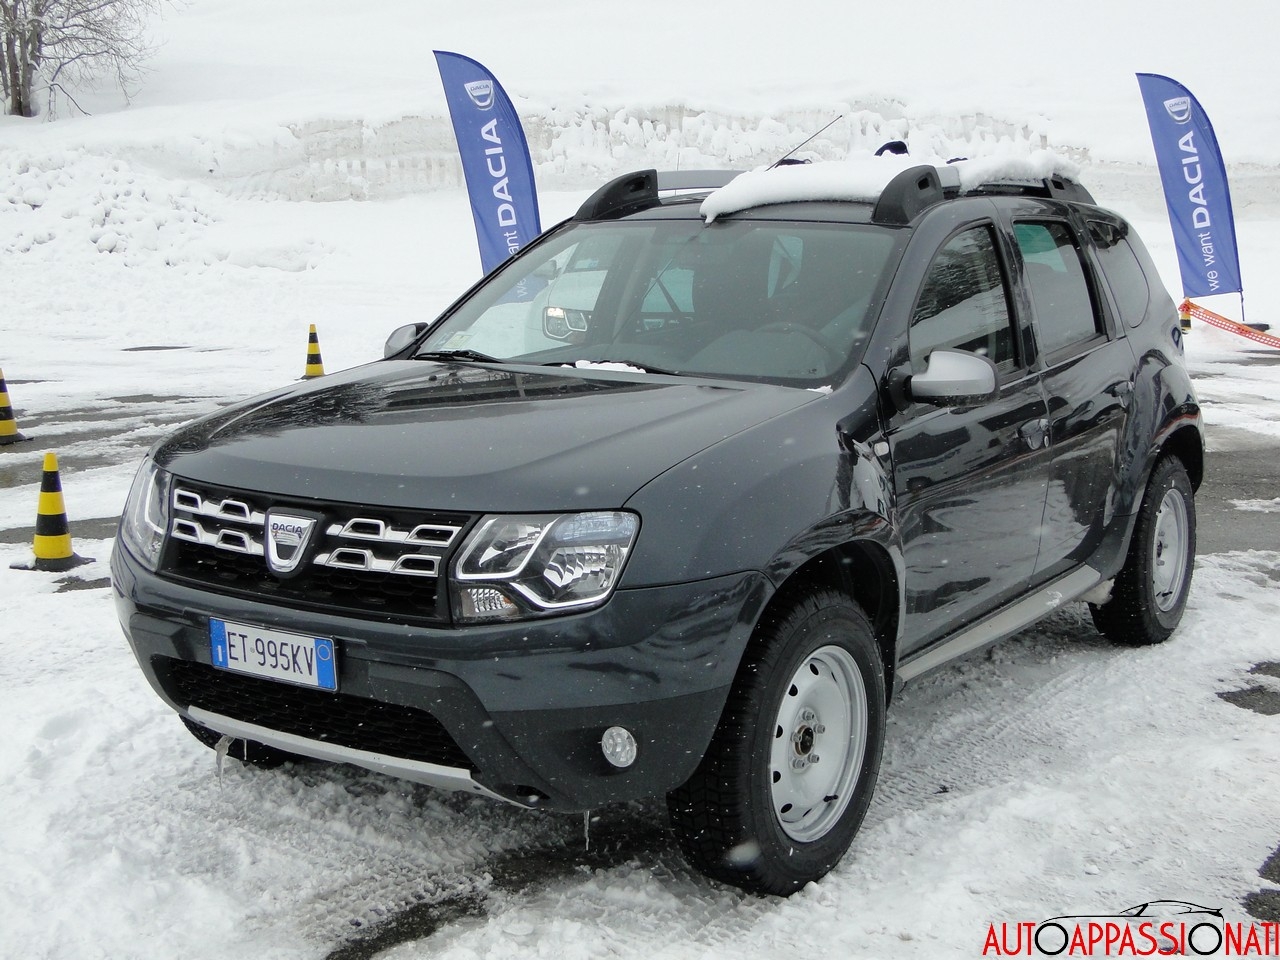 Prova Dacia Duster 2014 sulla neve